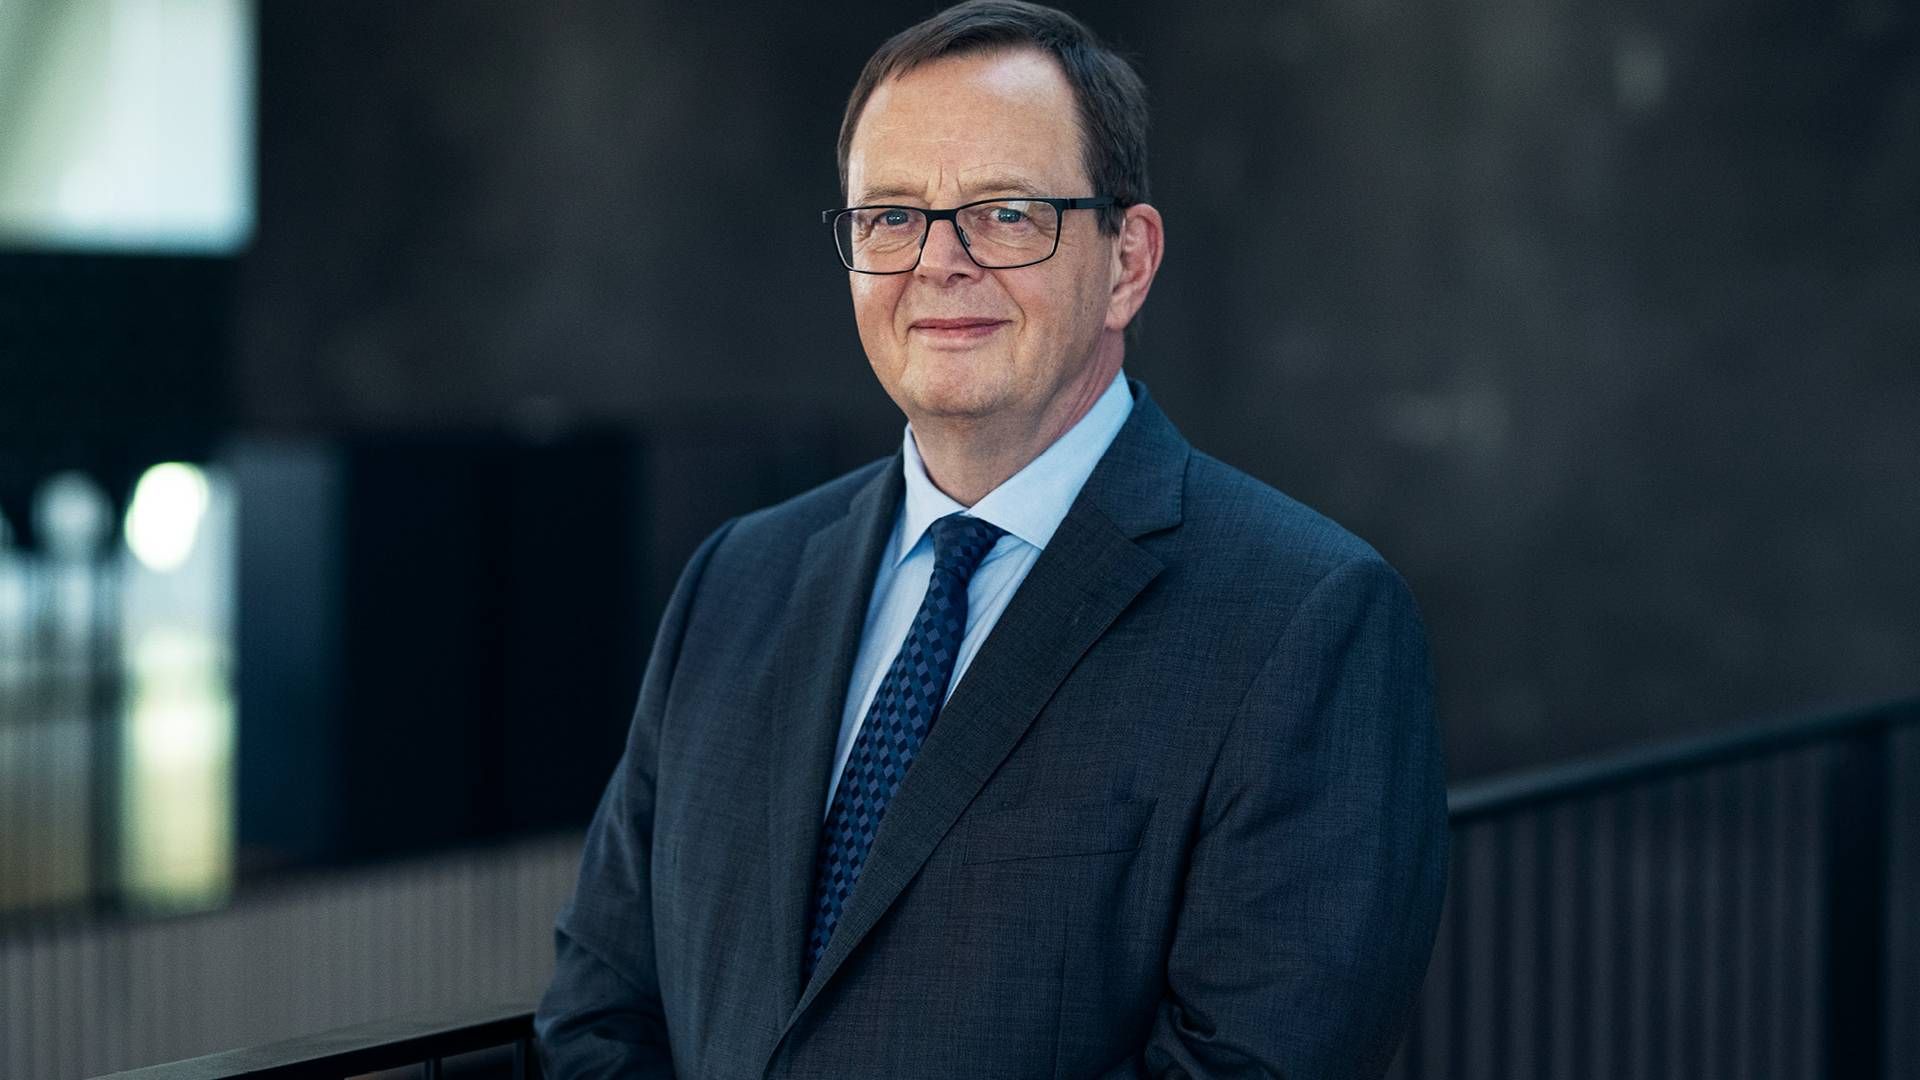 Nationalbankdirektør Christian Kettel Thomsen ser de danske banker stå et solidt sted i forhold til et årti siden. | Foto: Pr